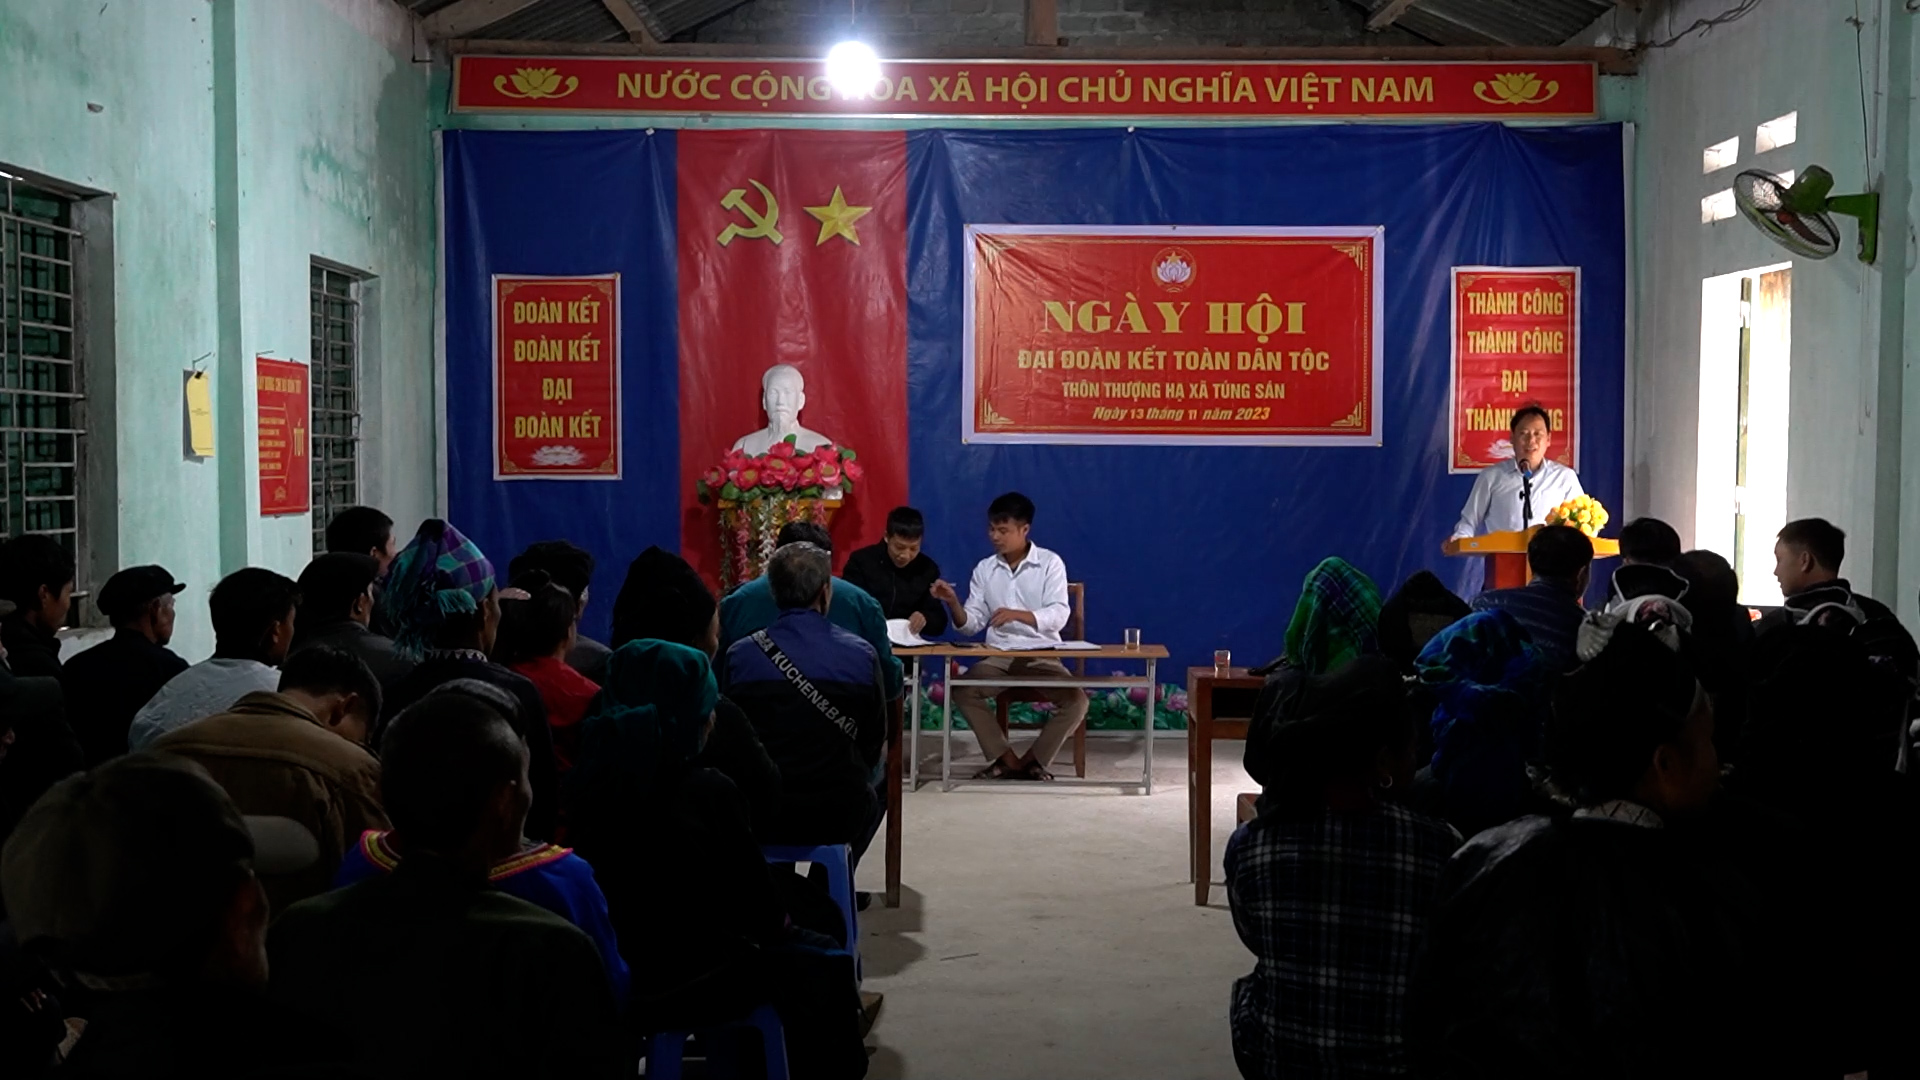 Phó chủ tịch UBND huyện dự Ngày hội Đại đoàn kết thôn Thượng Hạ xã Túng Sán